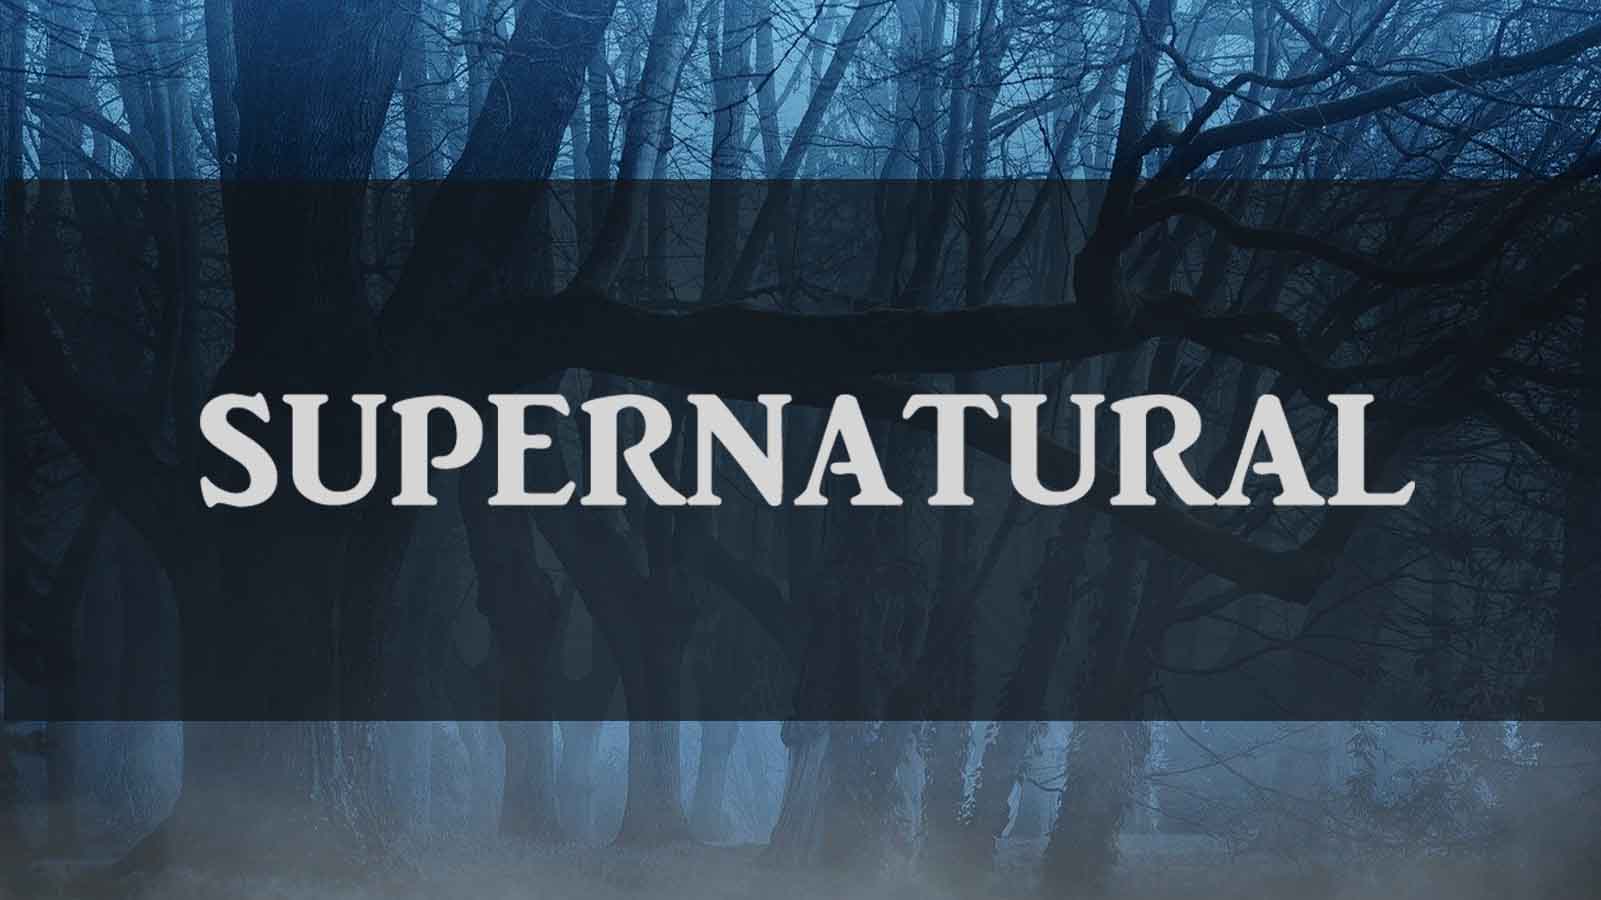 ついに完結するドラマ Supernatural スーパーナチュラル の魅力をご紹介